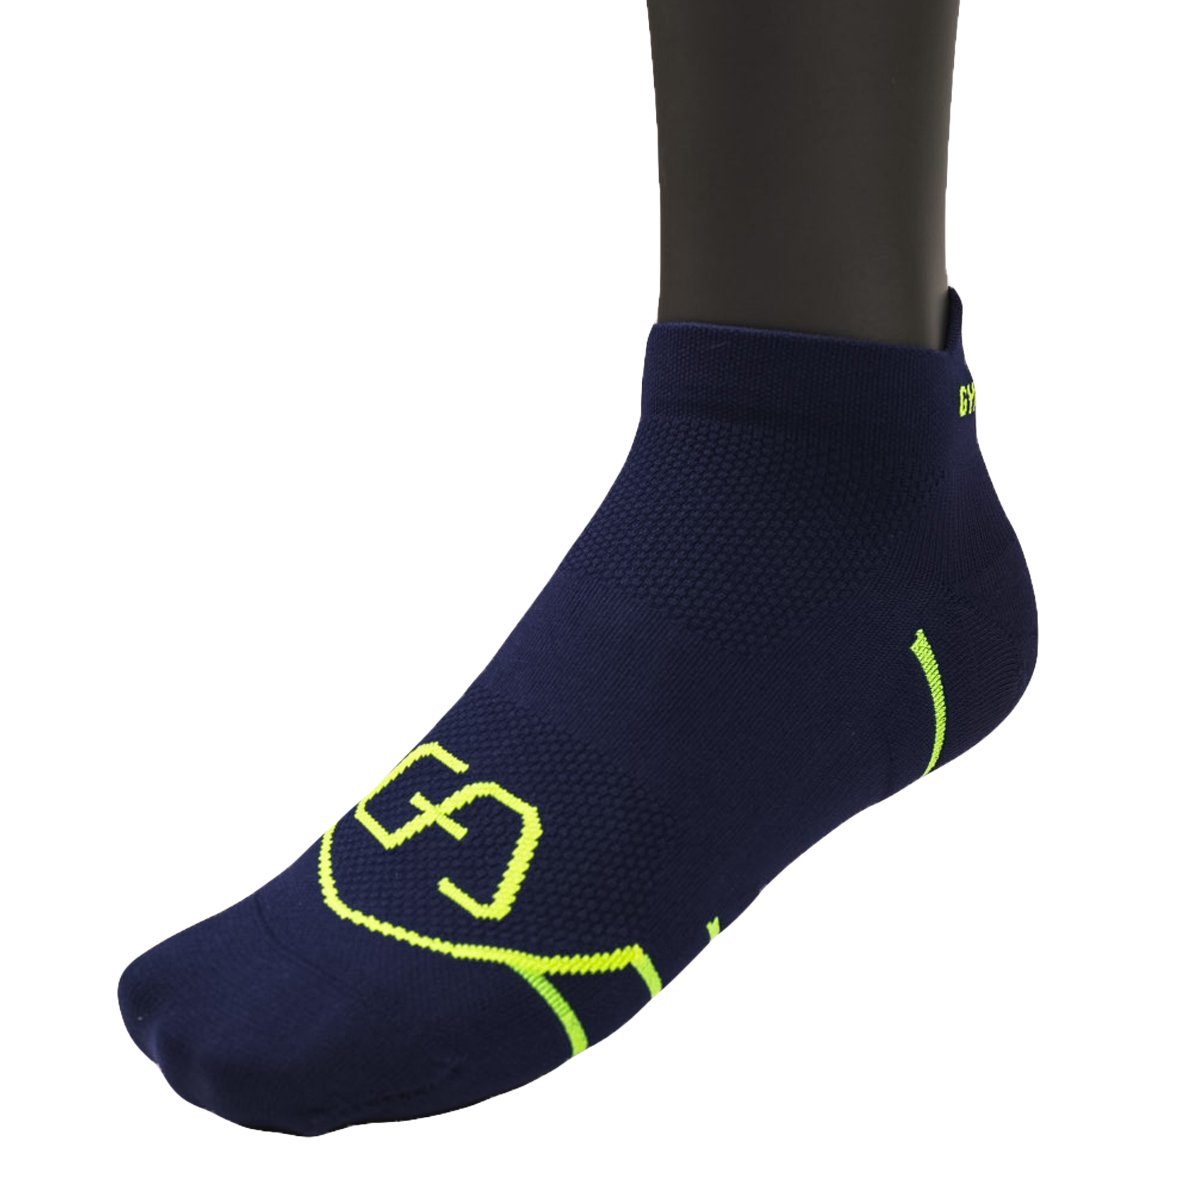 GYM AESTHETICS Funktionssocken Essential Ankle Compression Socks Kompression, stützend, für jede Sportart Navy